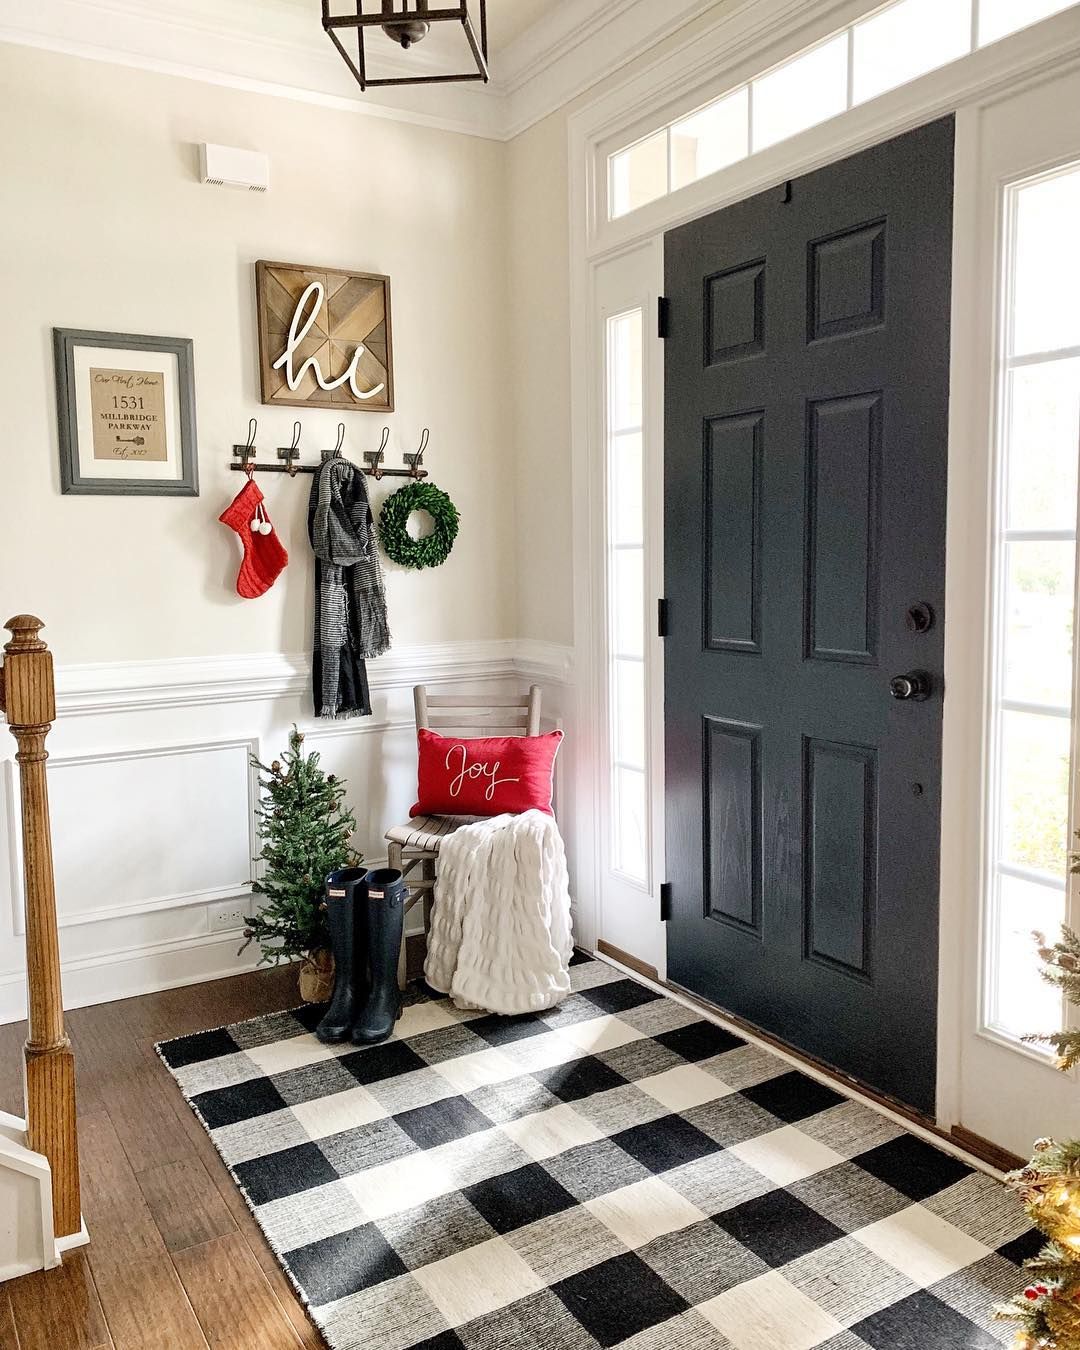 Black and White Buffalo Check Plaid Rug Christmas Entryway via @decoratingaddict #ChristmasDecor #ChristmasHome